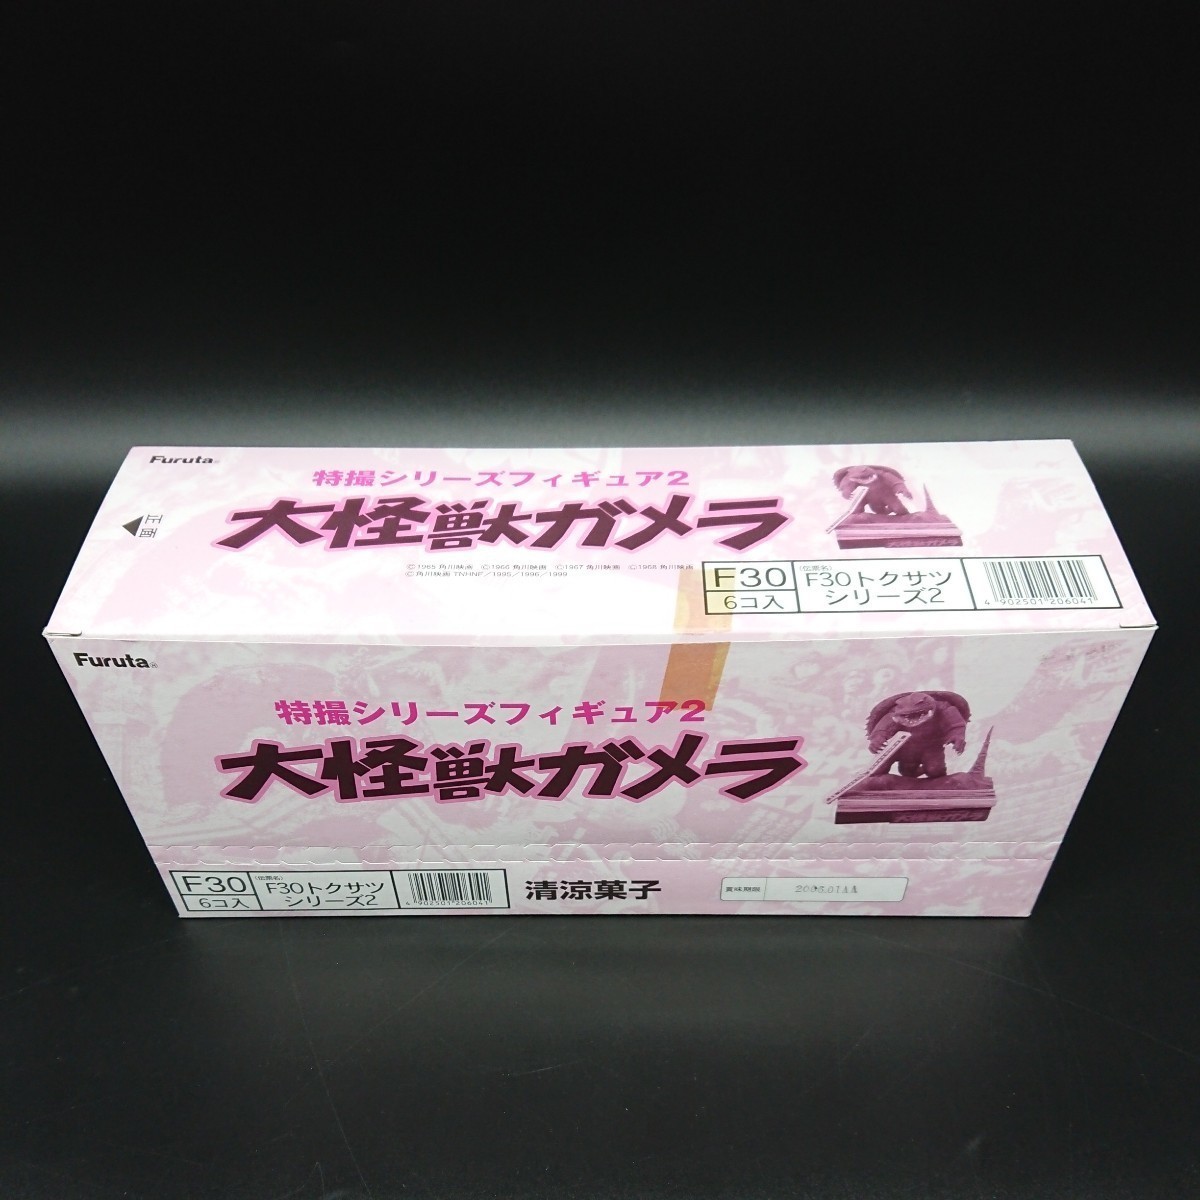 内袋未開封品 特撮シリーズフィギュア2 大怪獣ガメラ 1BOX (6個入り) 全7種+1(+彩色違い2種) フルコンプリート Furuta